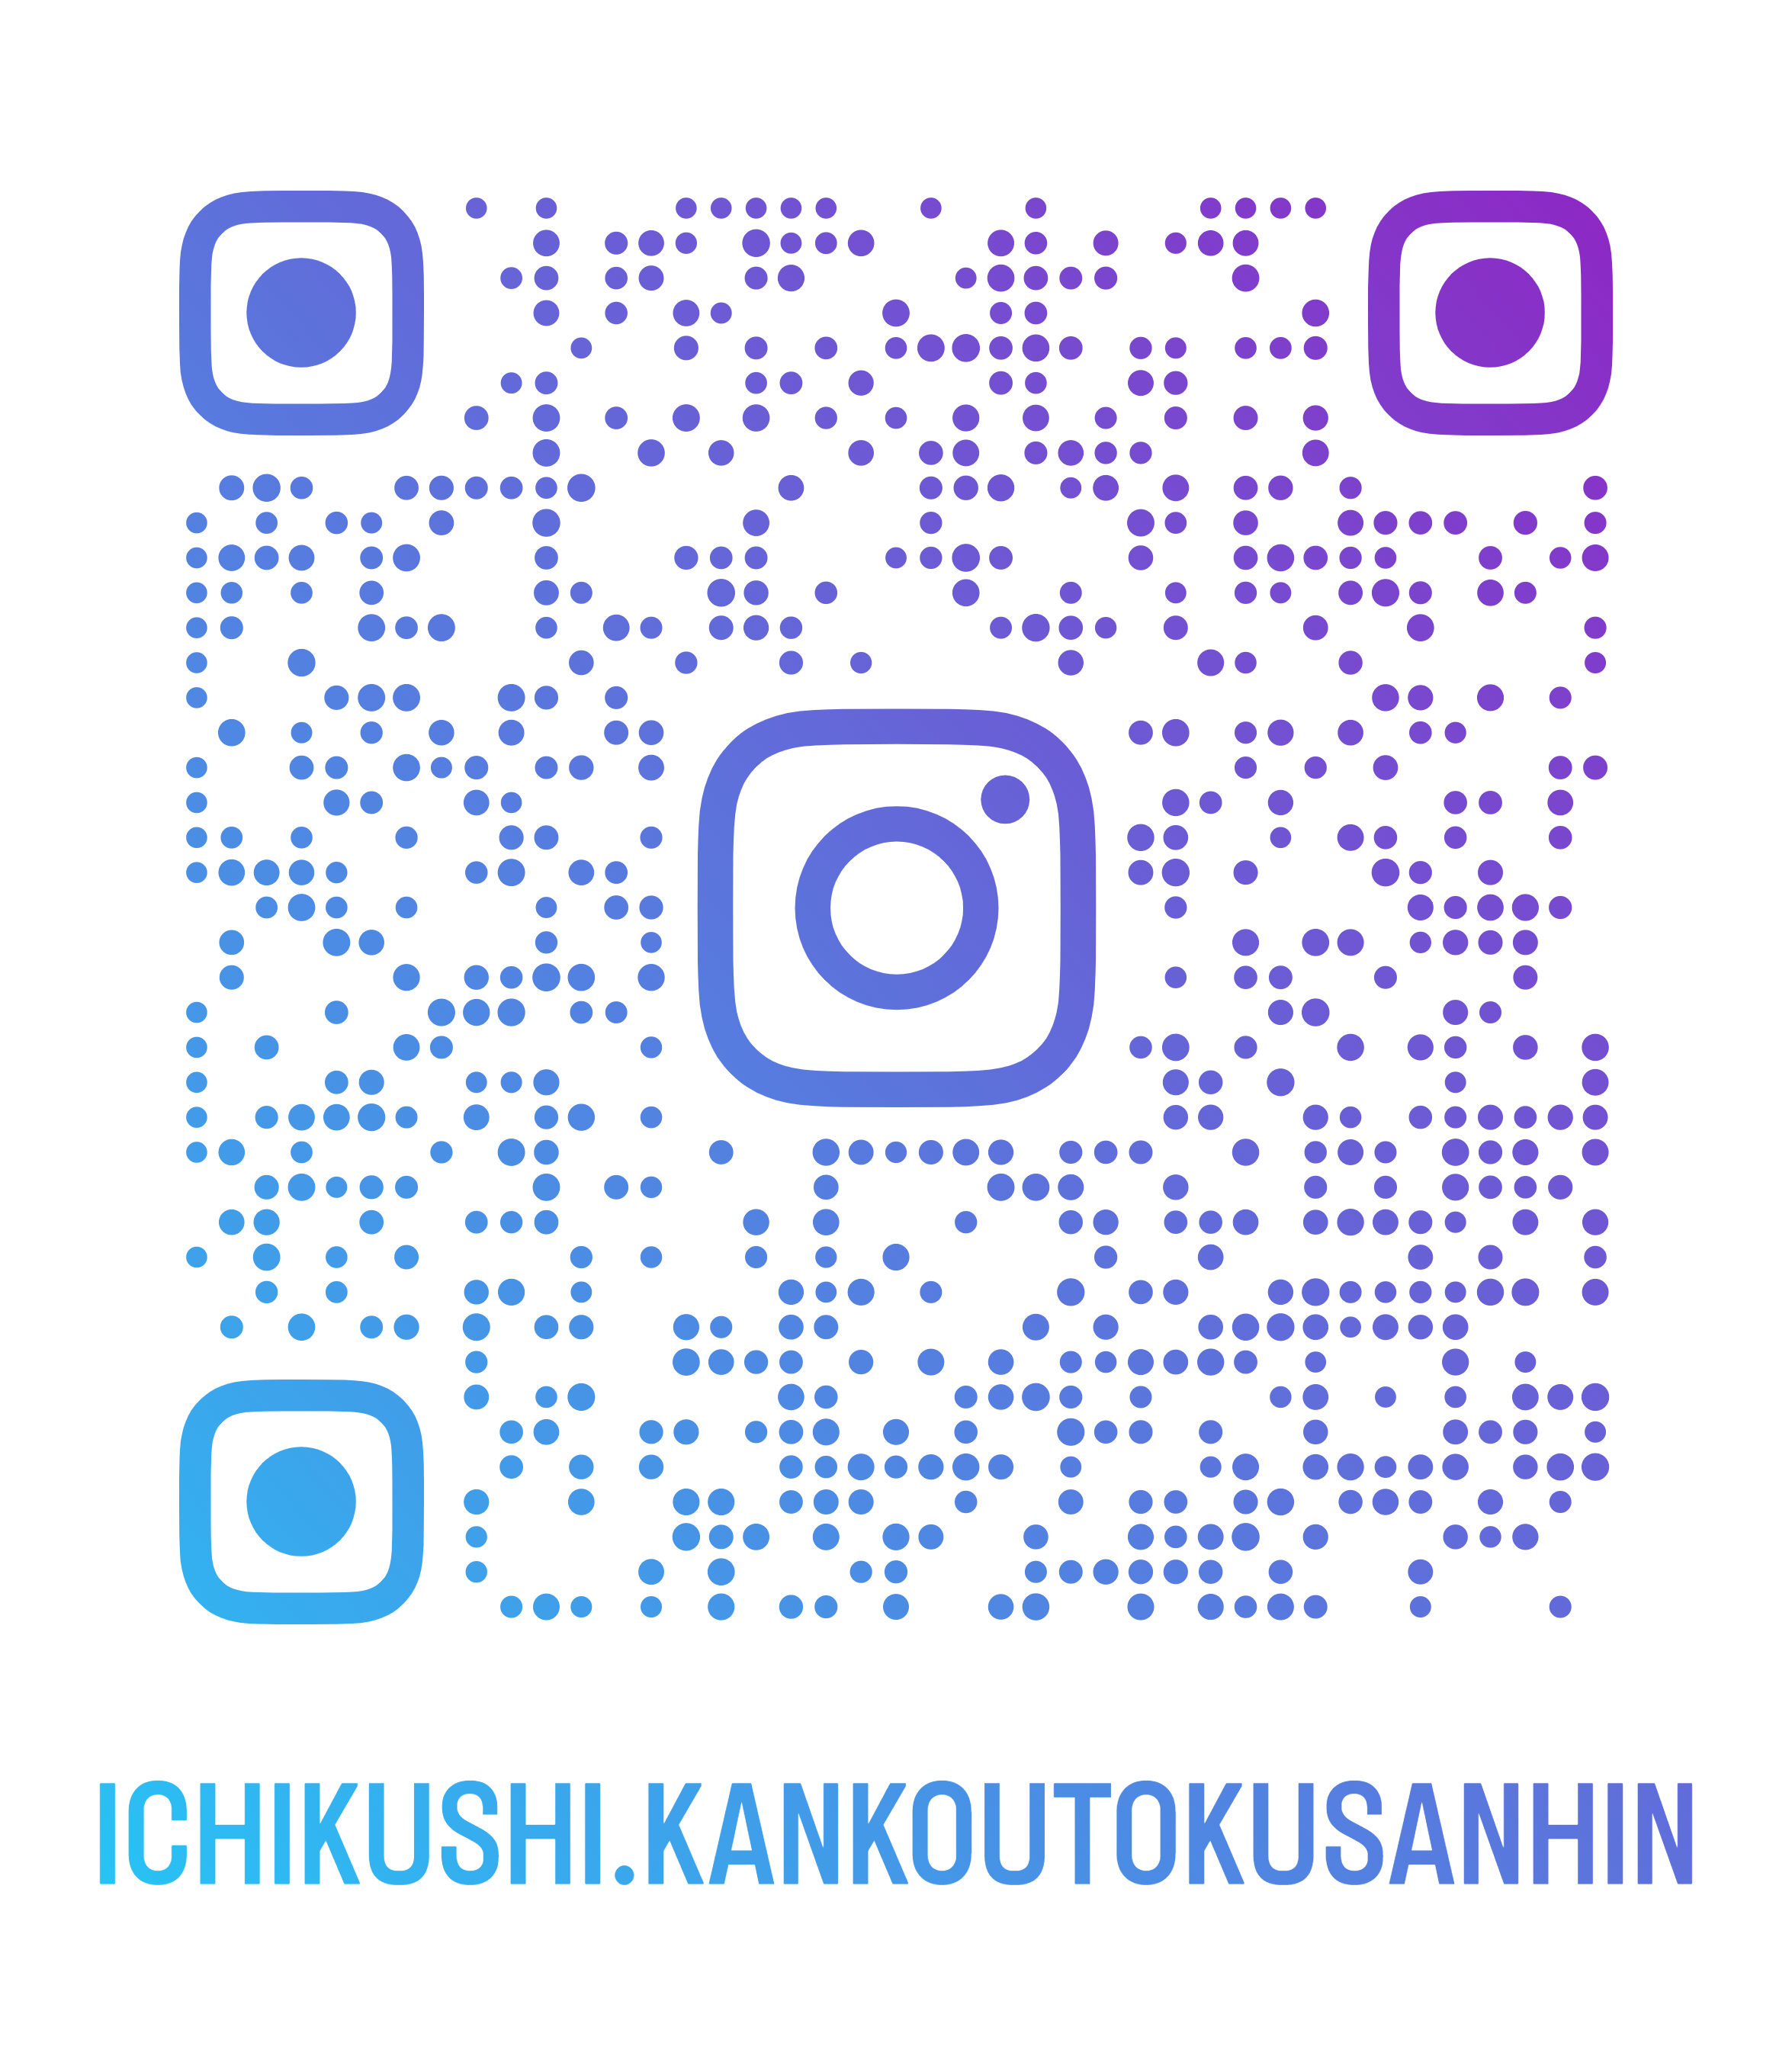 http://www.ikcci.jp/ichikushi.kankoutokusanhin_qr%20%282%29.png